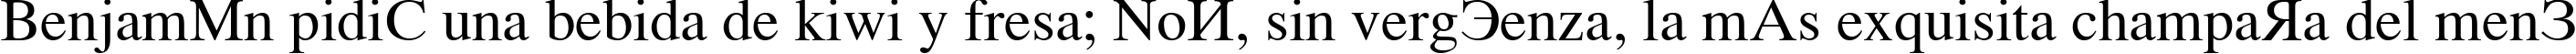 Пример написания шрифтом KOI8 Times текста на испанском